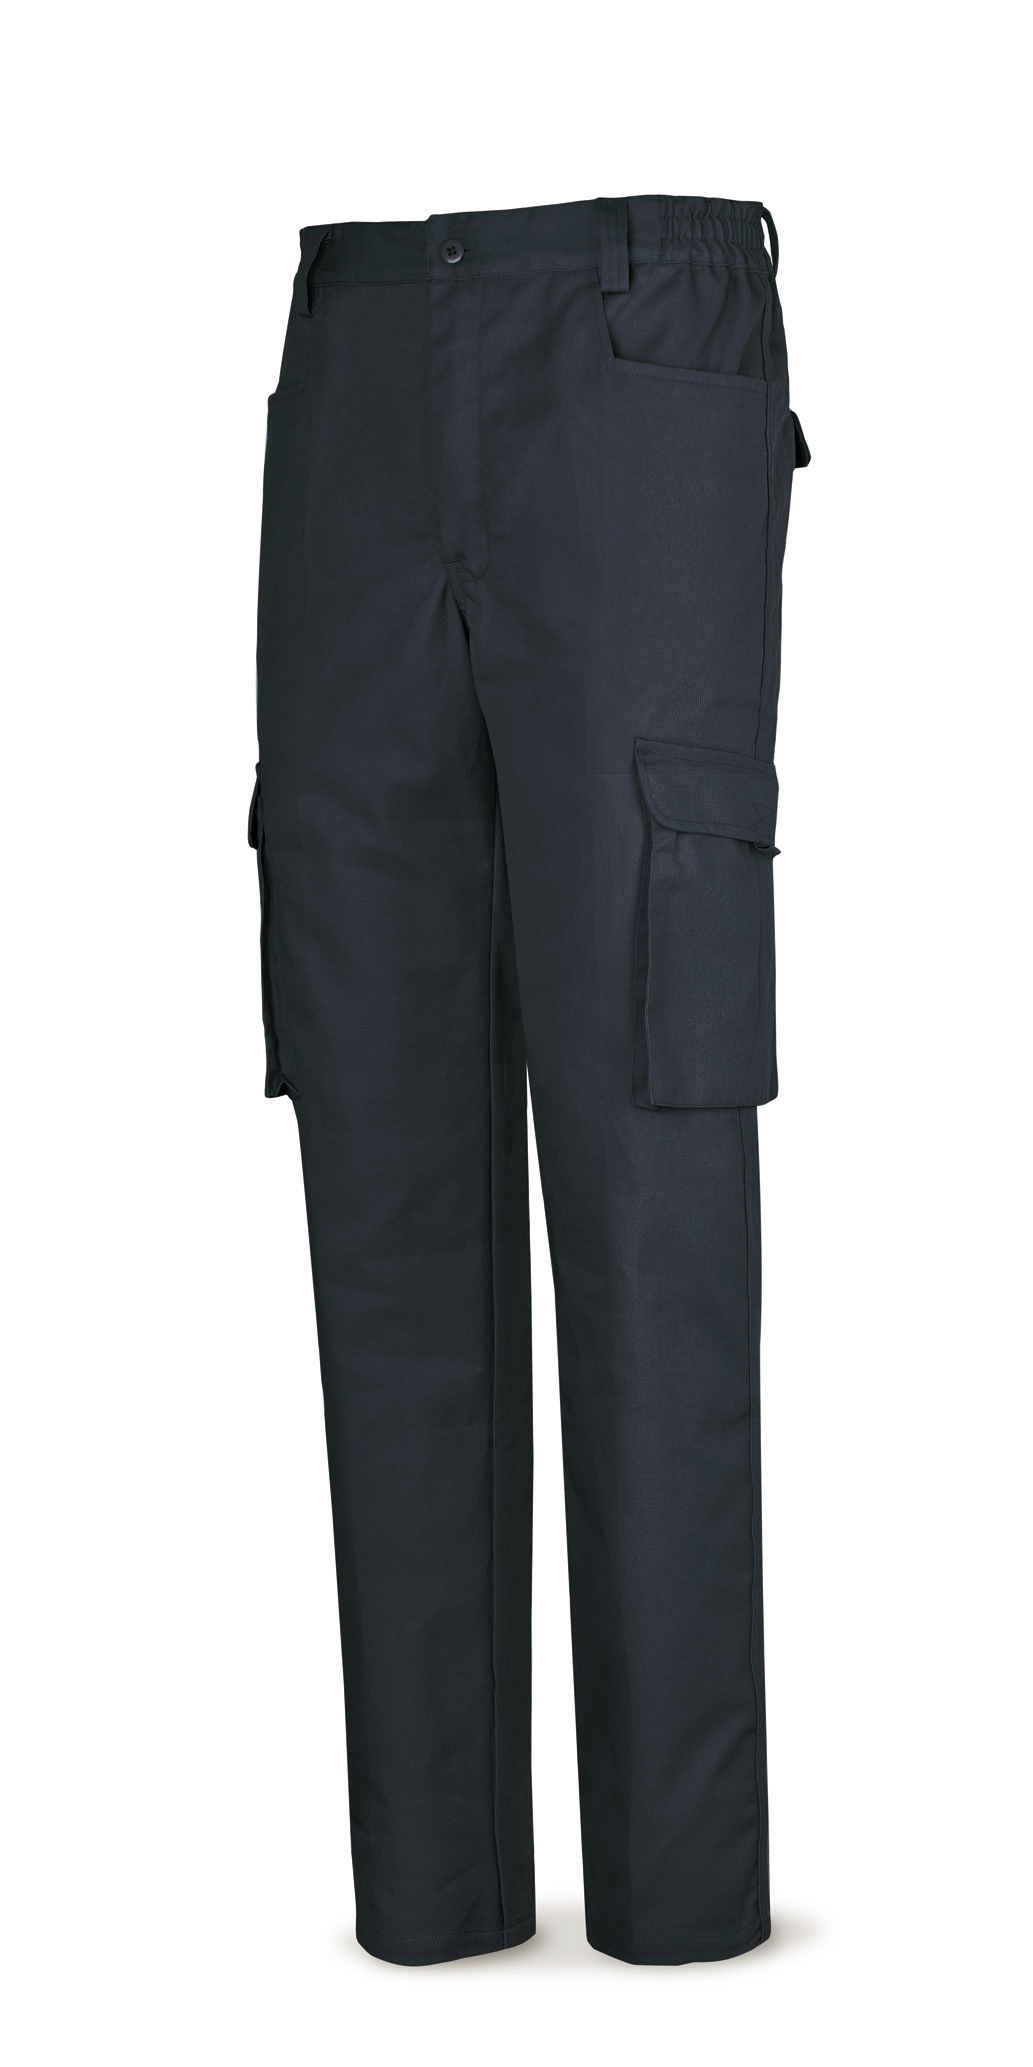 488-PTA Top Vestuario Laboral Serie Top Pantalón azul marino poliester/algodón de 245 g. Multibolsillo